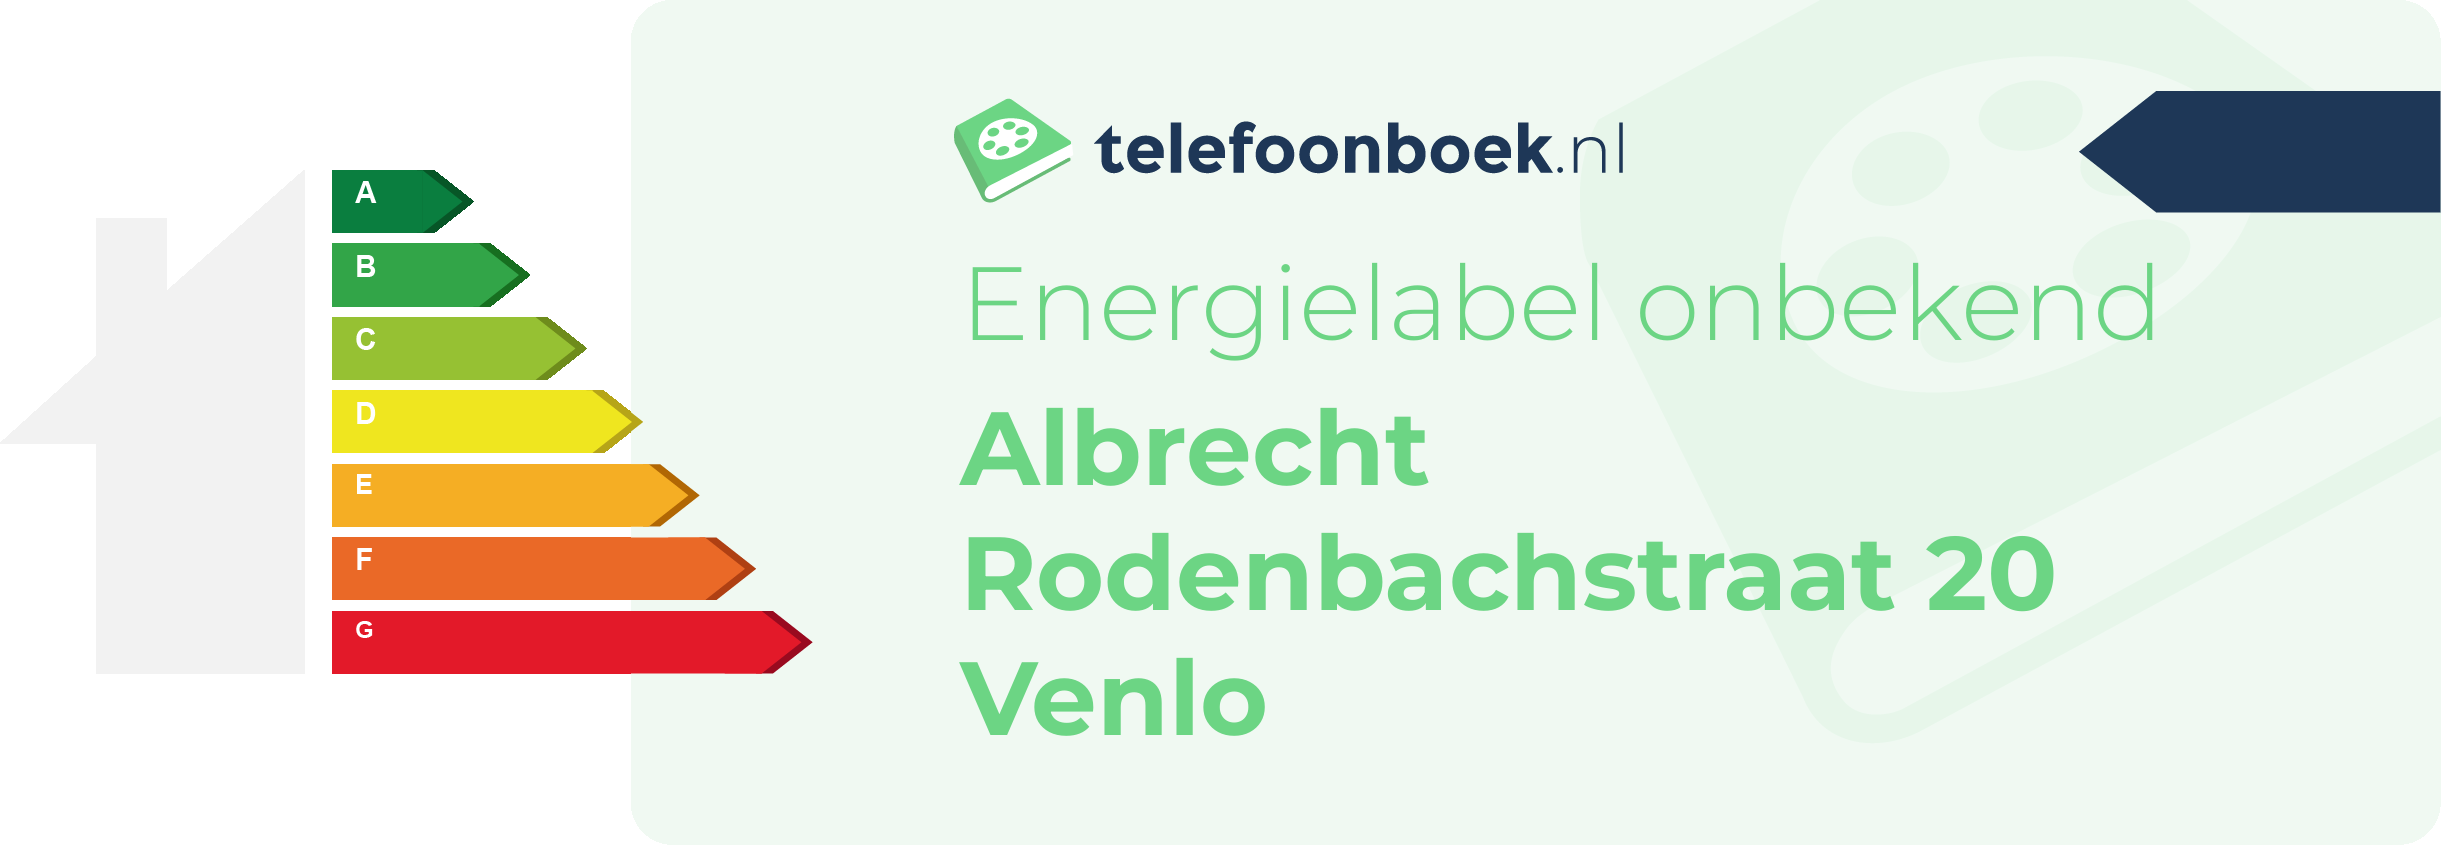 Energielabel Albrecht Rodenbachstraat 20 Venlo